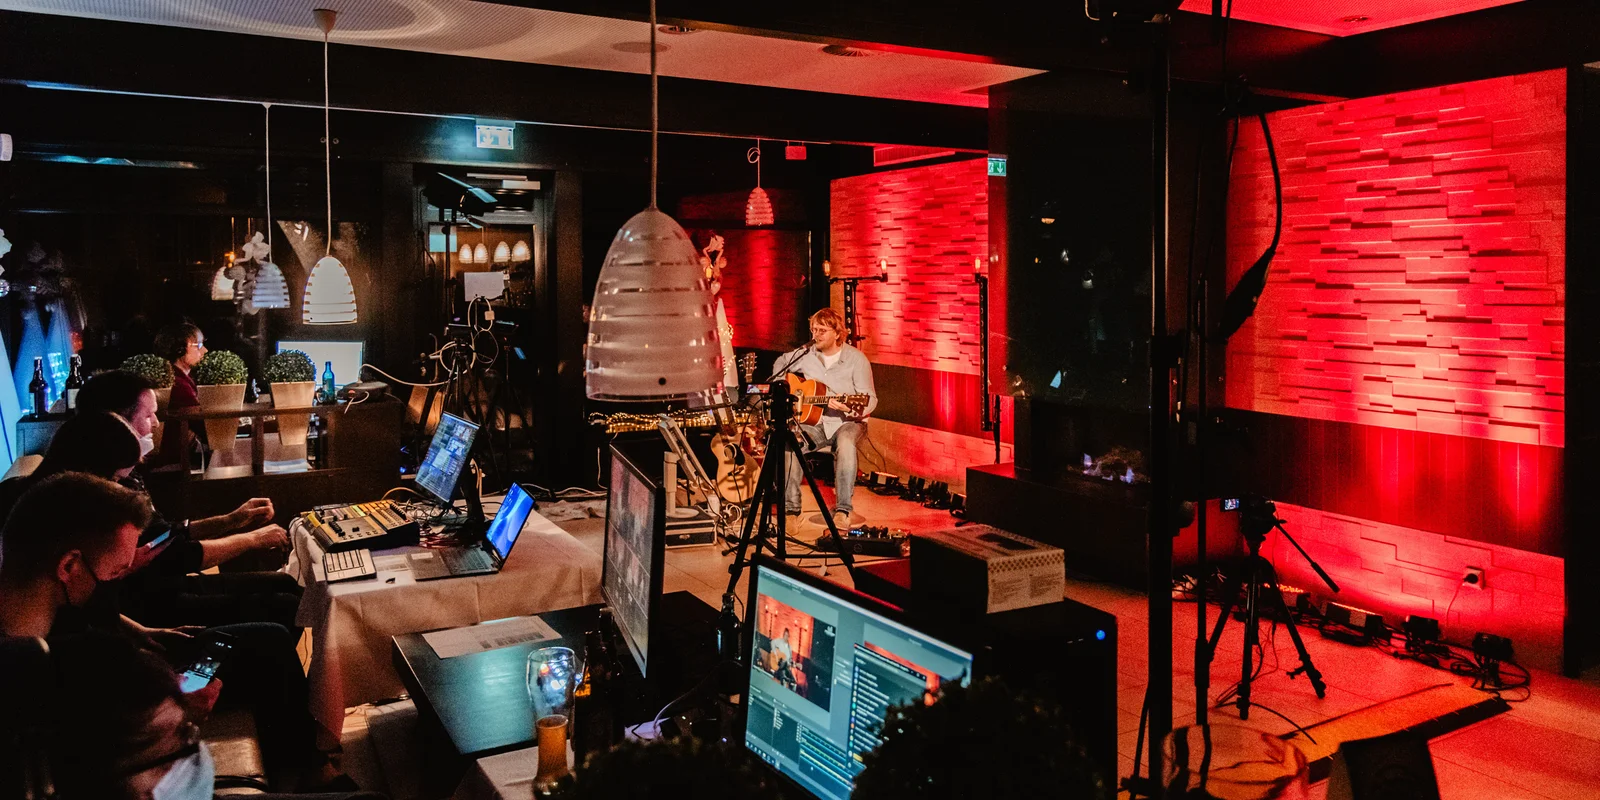 Ein blonder Gitarrist sitzt auf einem Barhocker vor einer rot beleuchteten Wand. Im Vordergrund sind mehrere Bildschirme aufgebaut, an denen Männer mit Corona-Masken sitzen, um einen Videostream zu koordinieren.